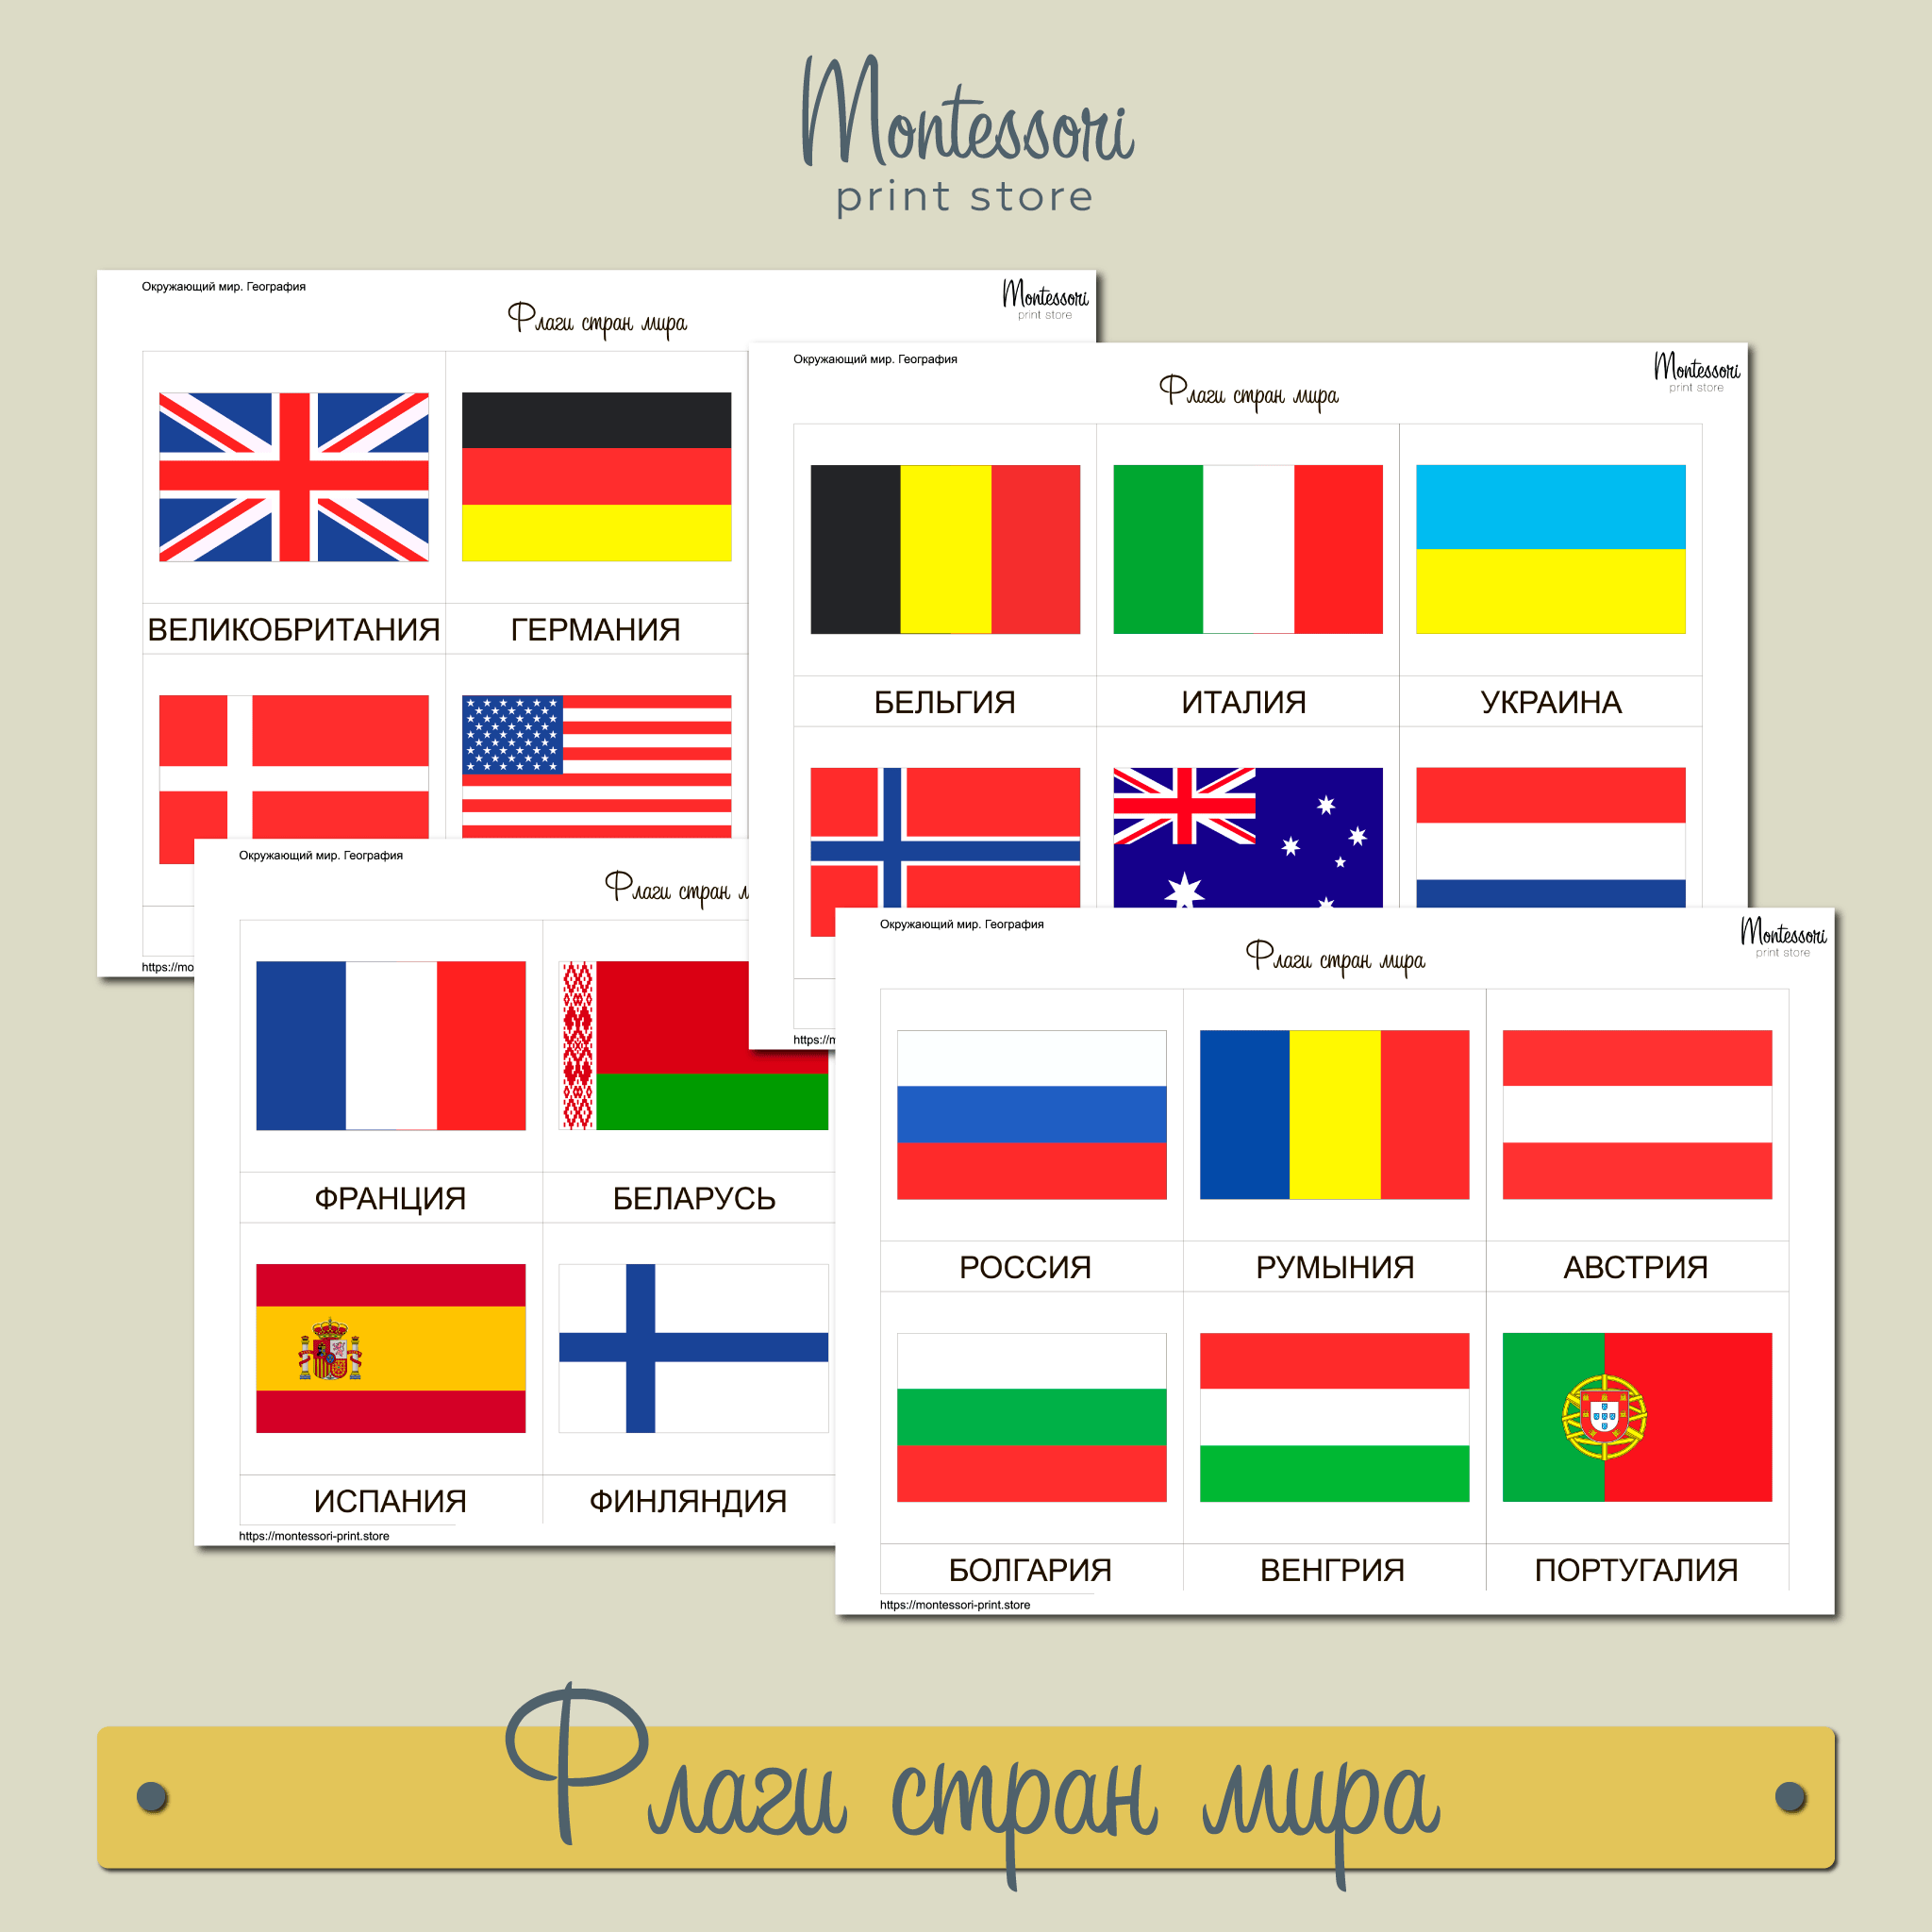 Все страны на каждую букву. Флаги Евросоюза с названиями страны на русском языке. Флаг г.